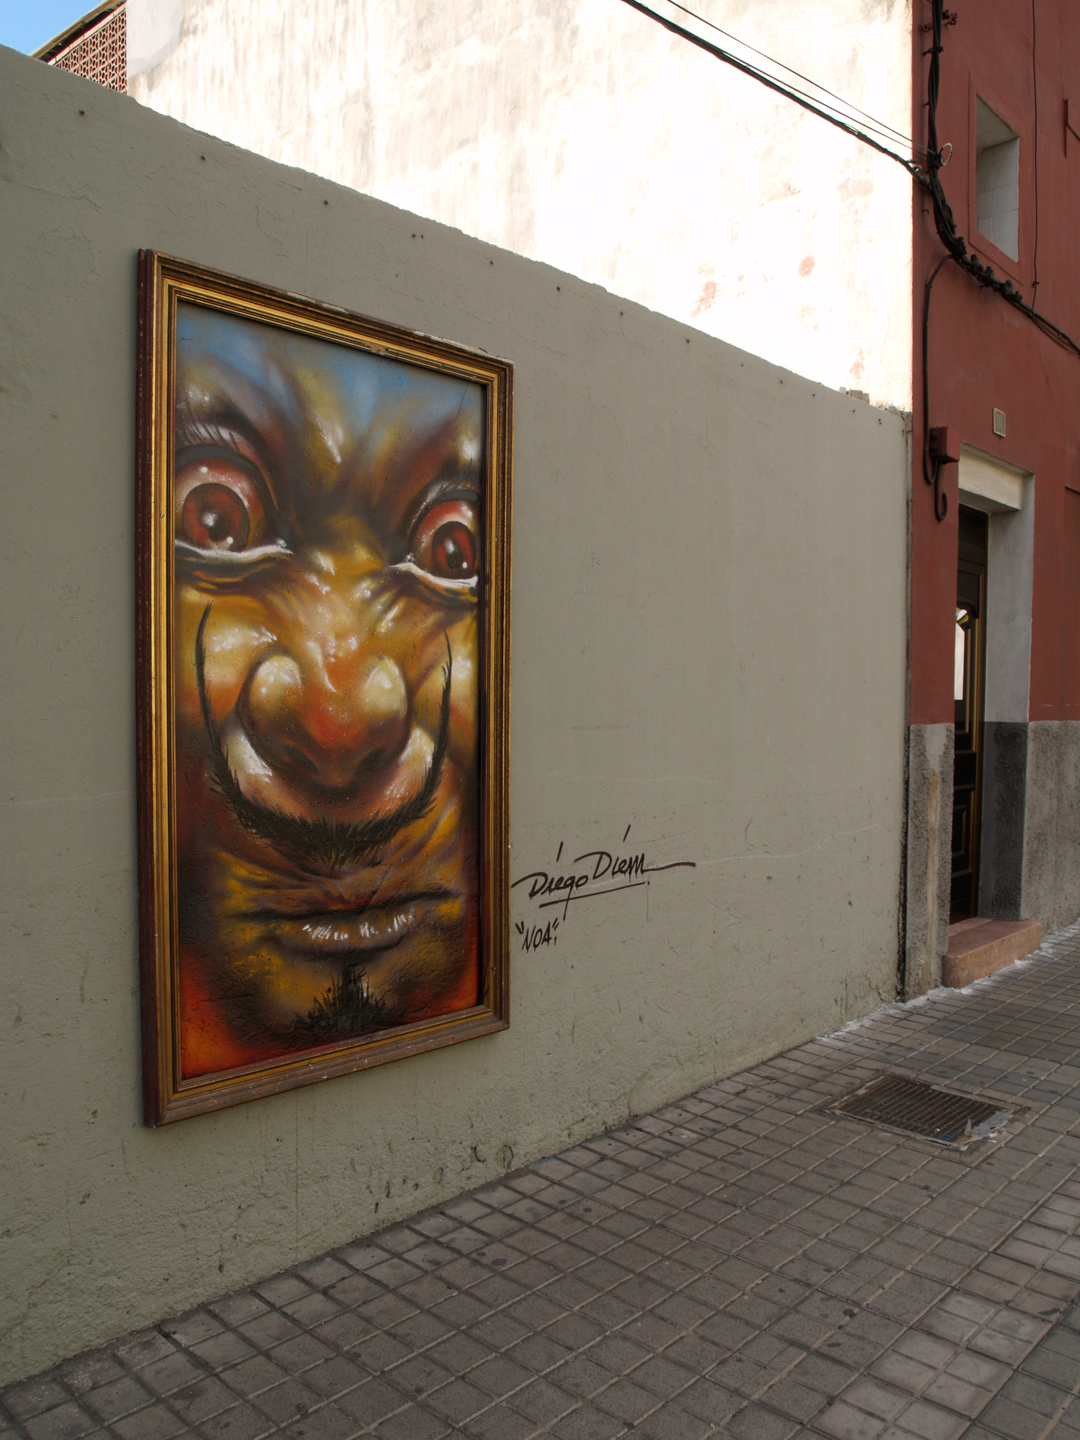 Diego Diem, Arte urbano, Gran Canaria, digerible